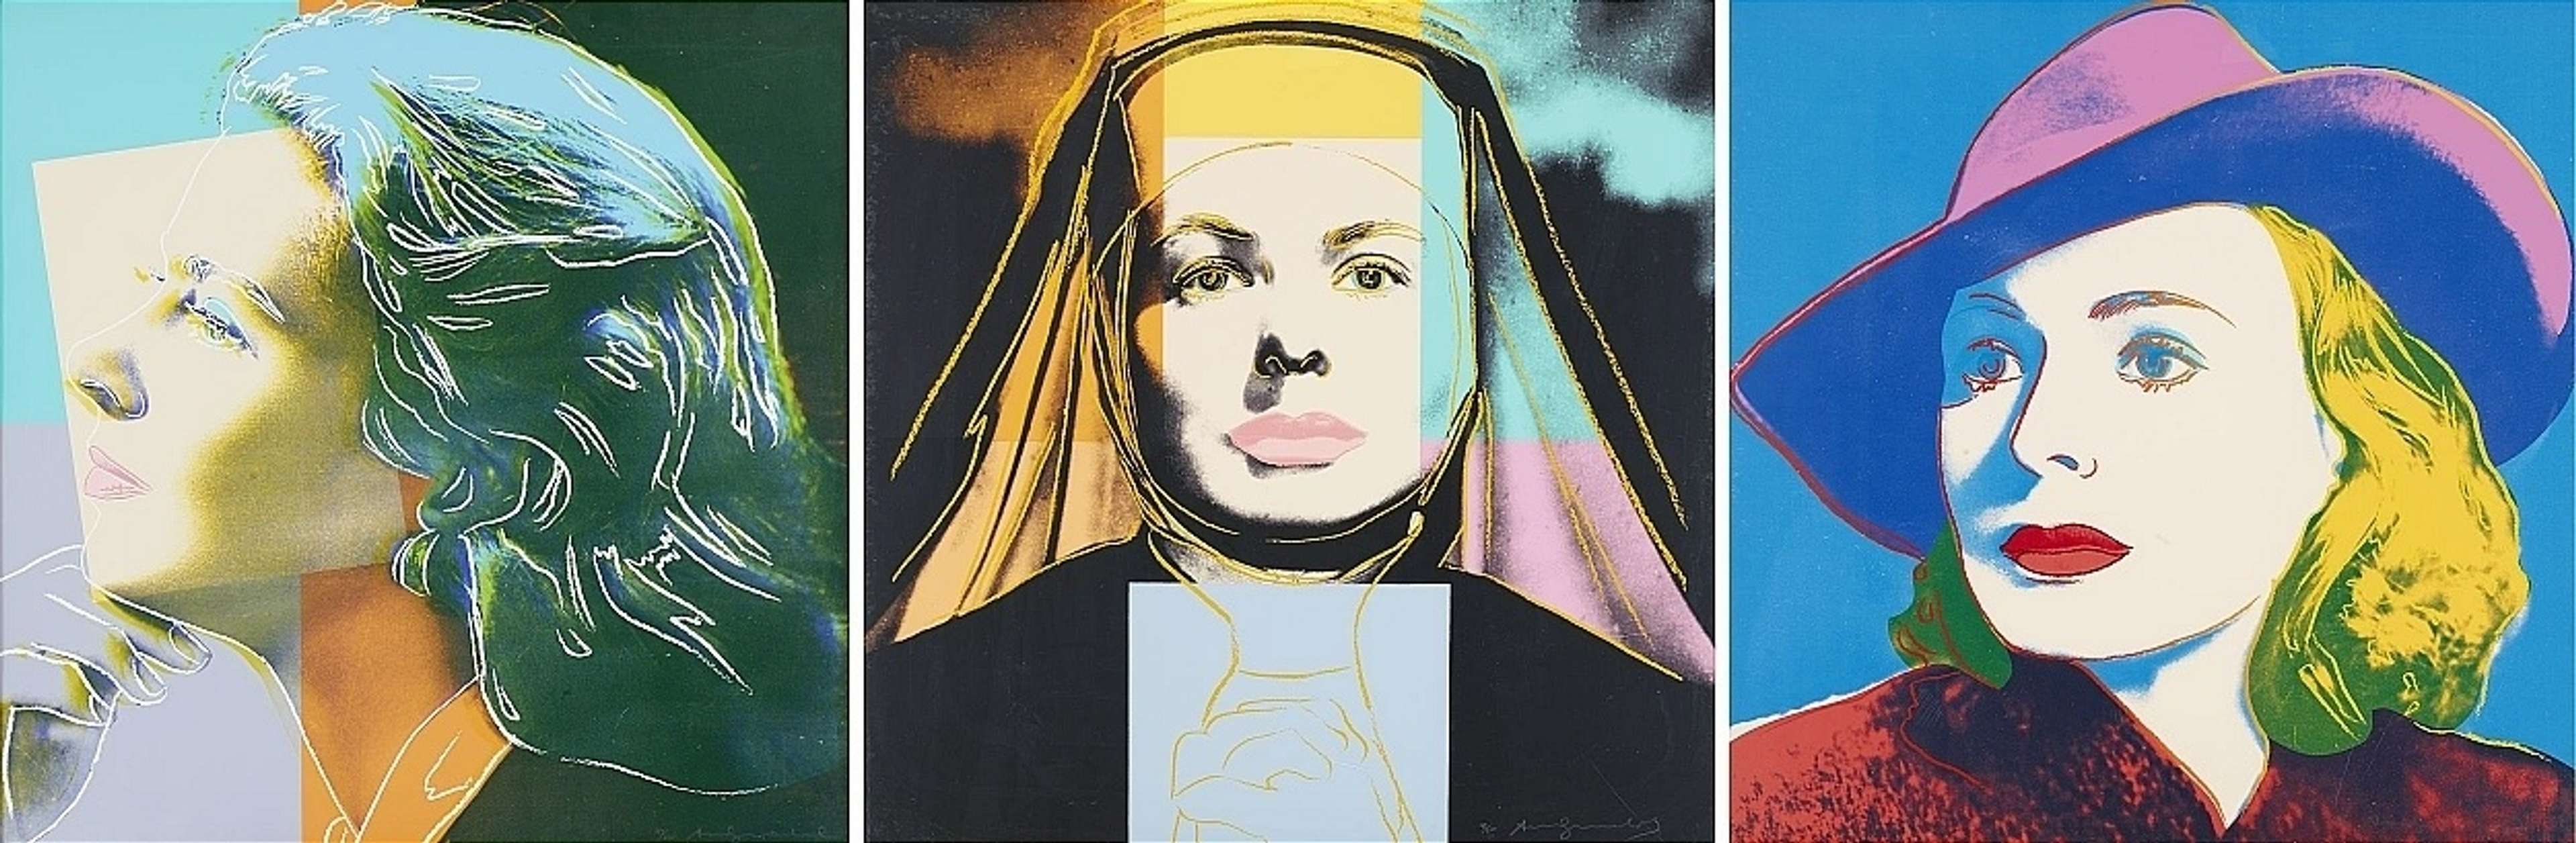 Ingrid Bergman by Andy Warhol - MyArtBroker